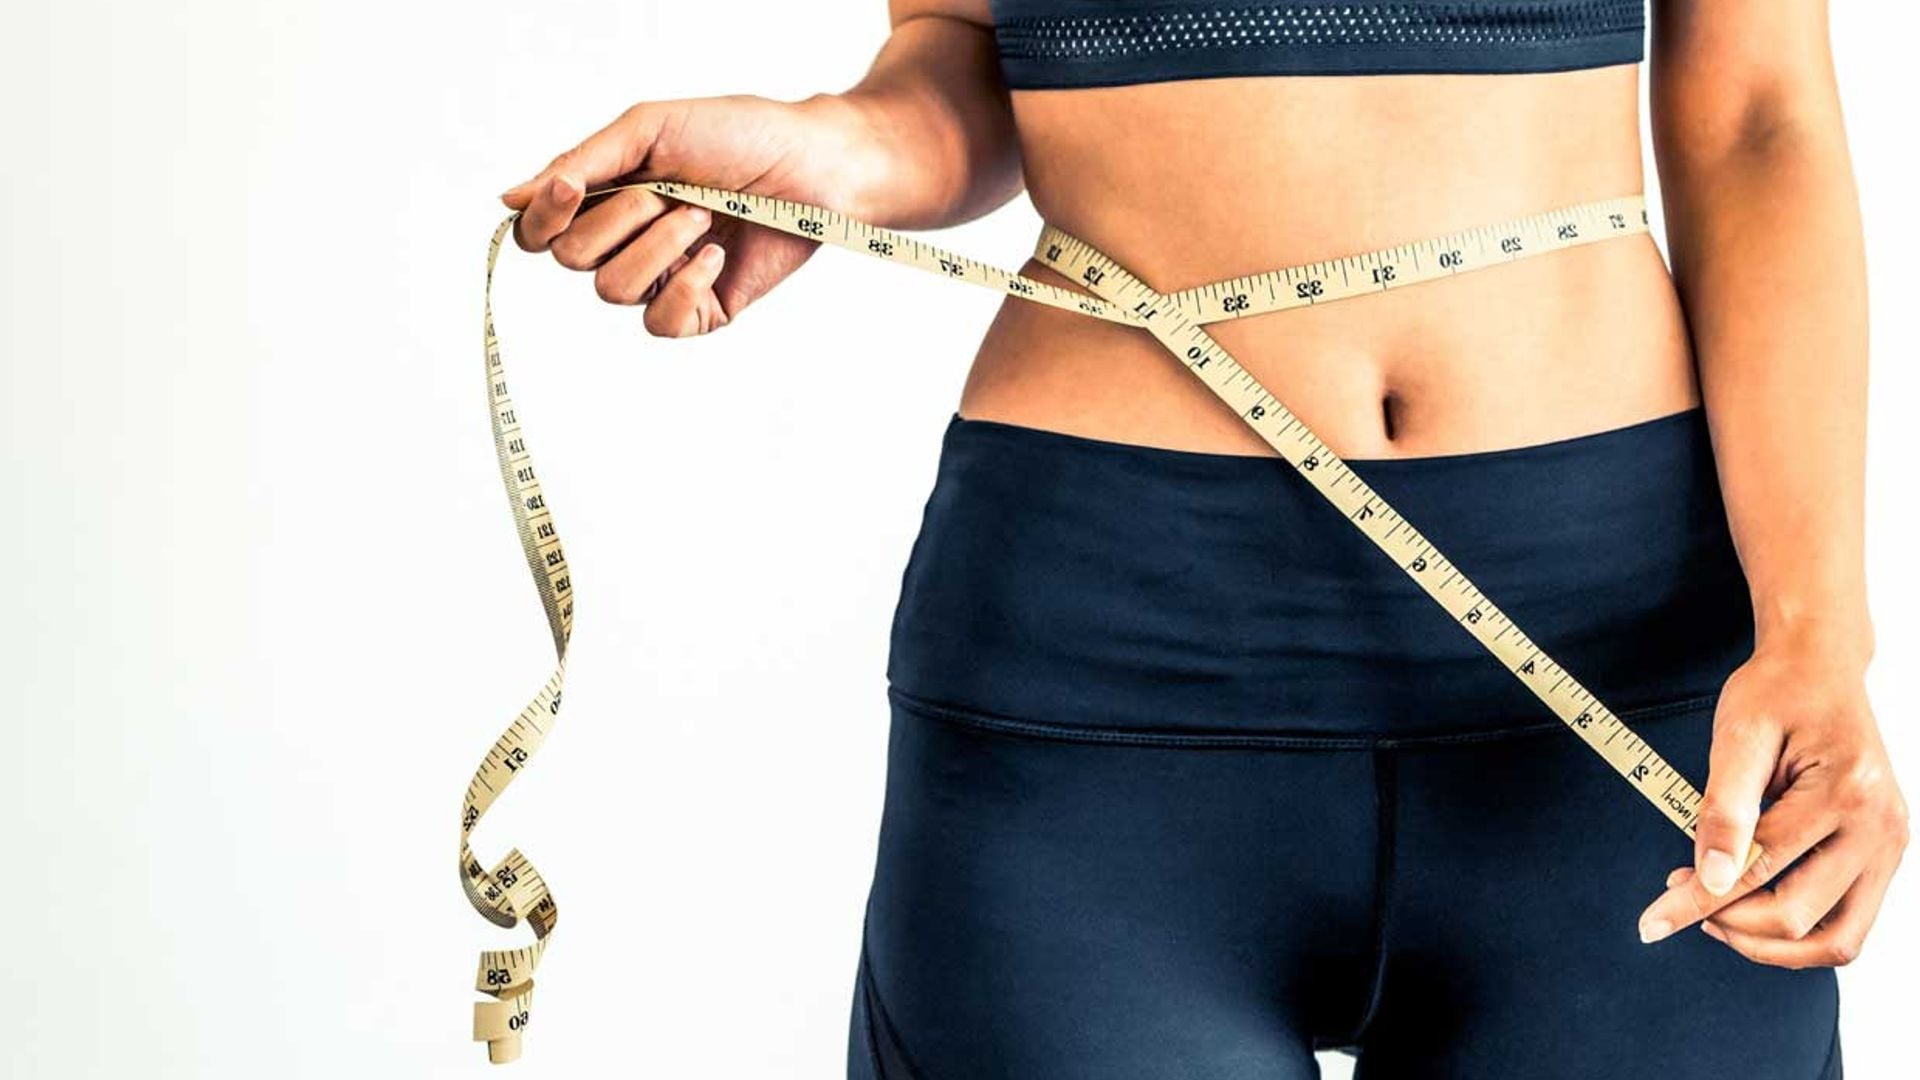 Apunta estos consejos de experto (ejercicios + dieta) para eliminar la grasa abdominal